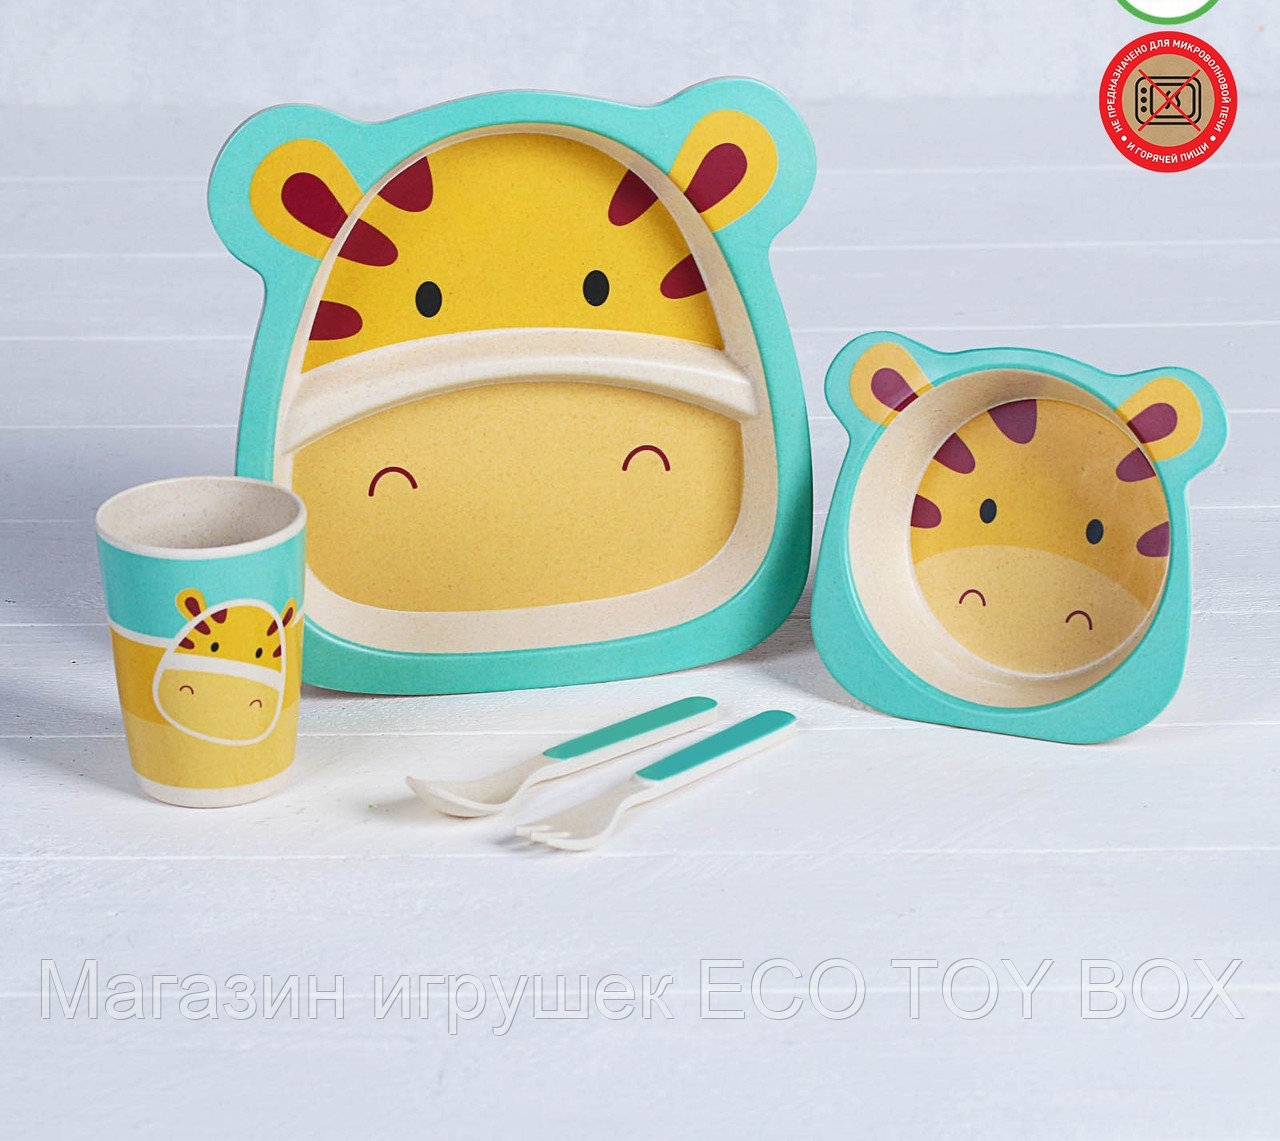 Набор детской посуды из бамбука «Жирафик», 5 предметов: тарелка, миска, стакан, столовые приборы, фото 1